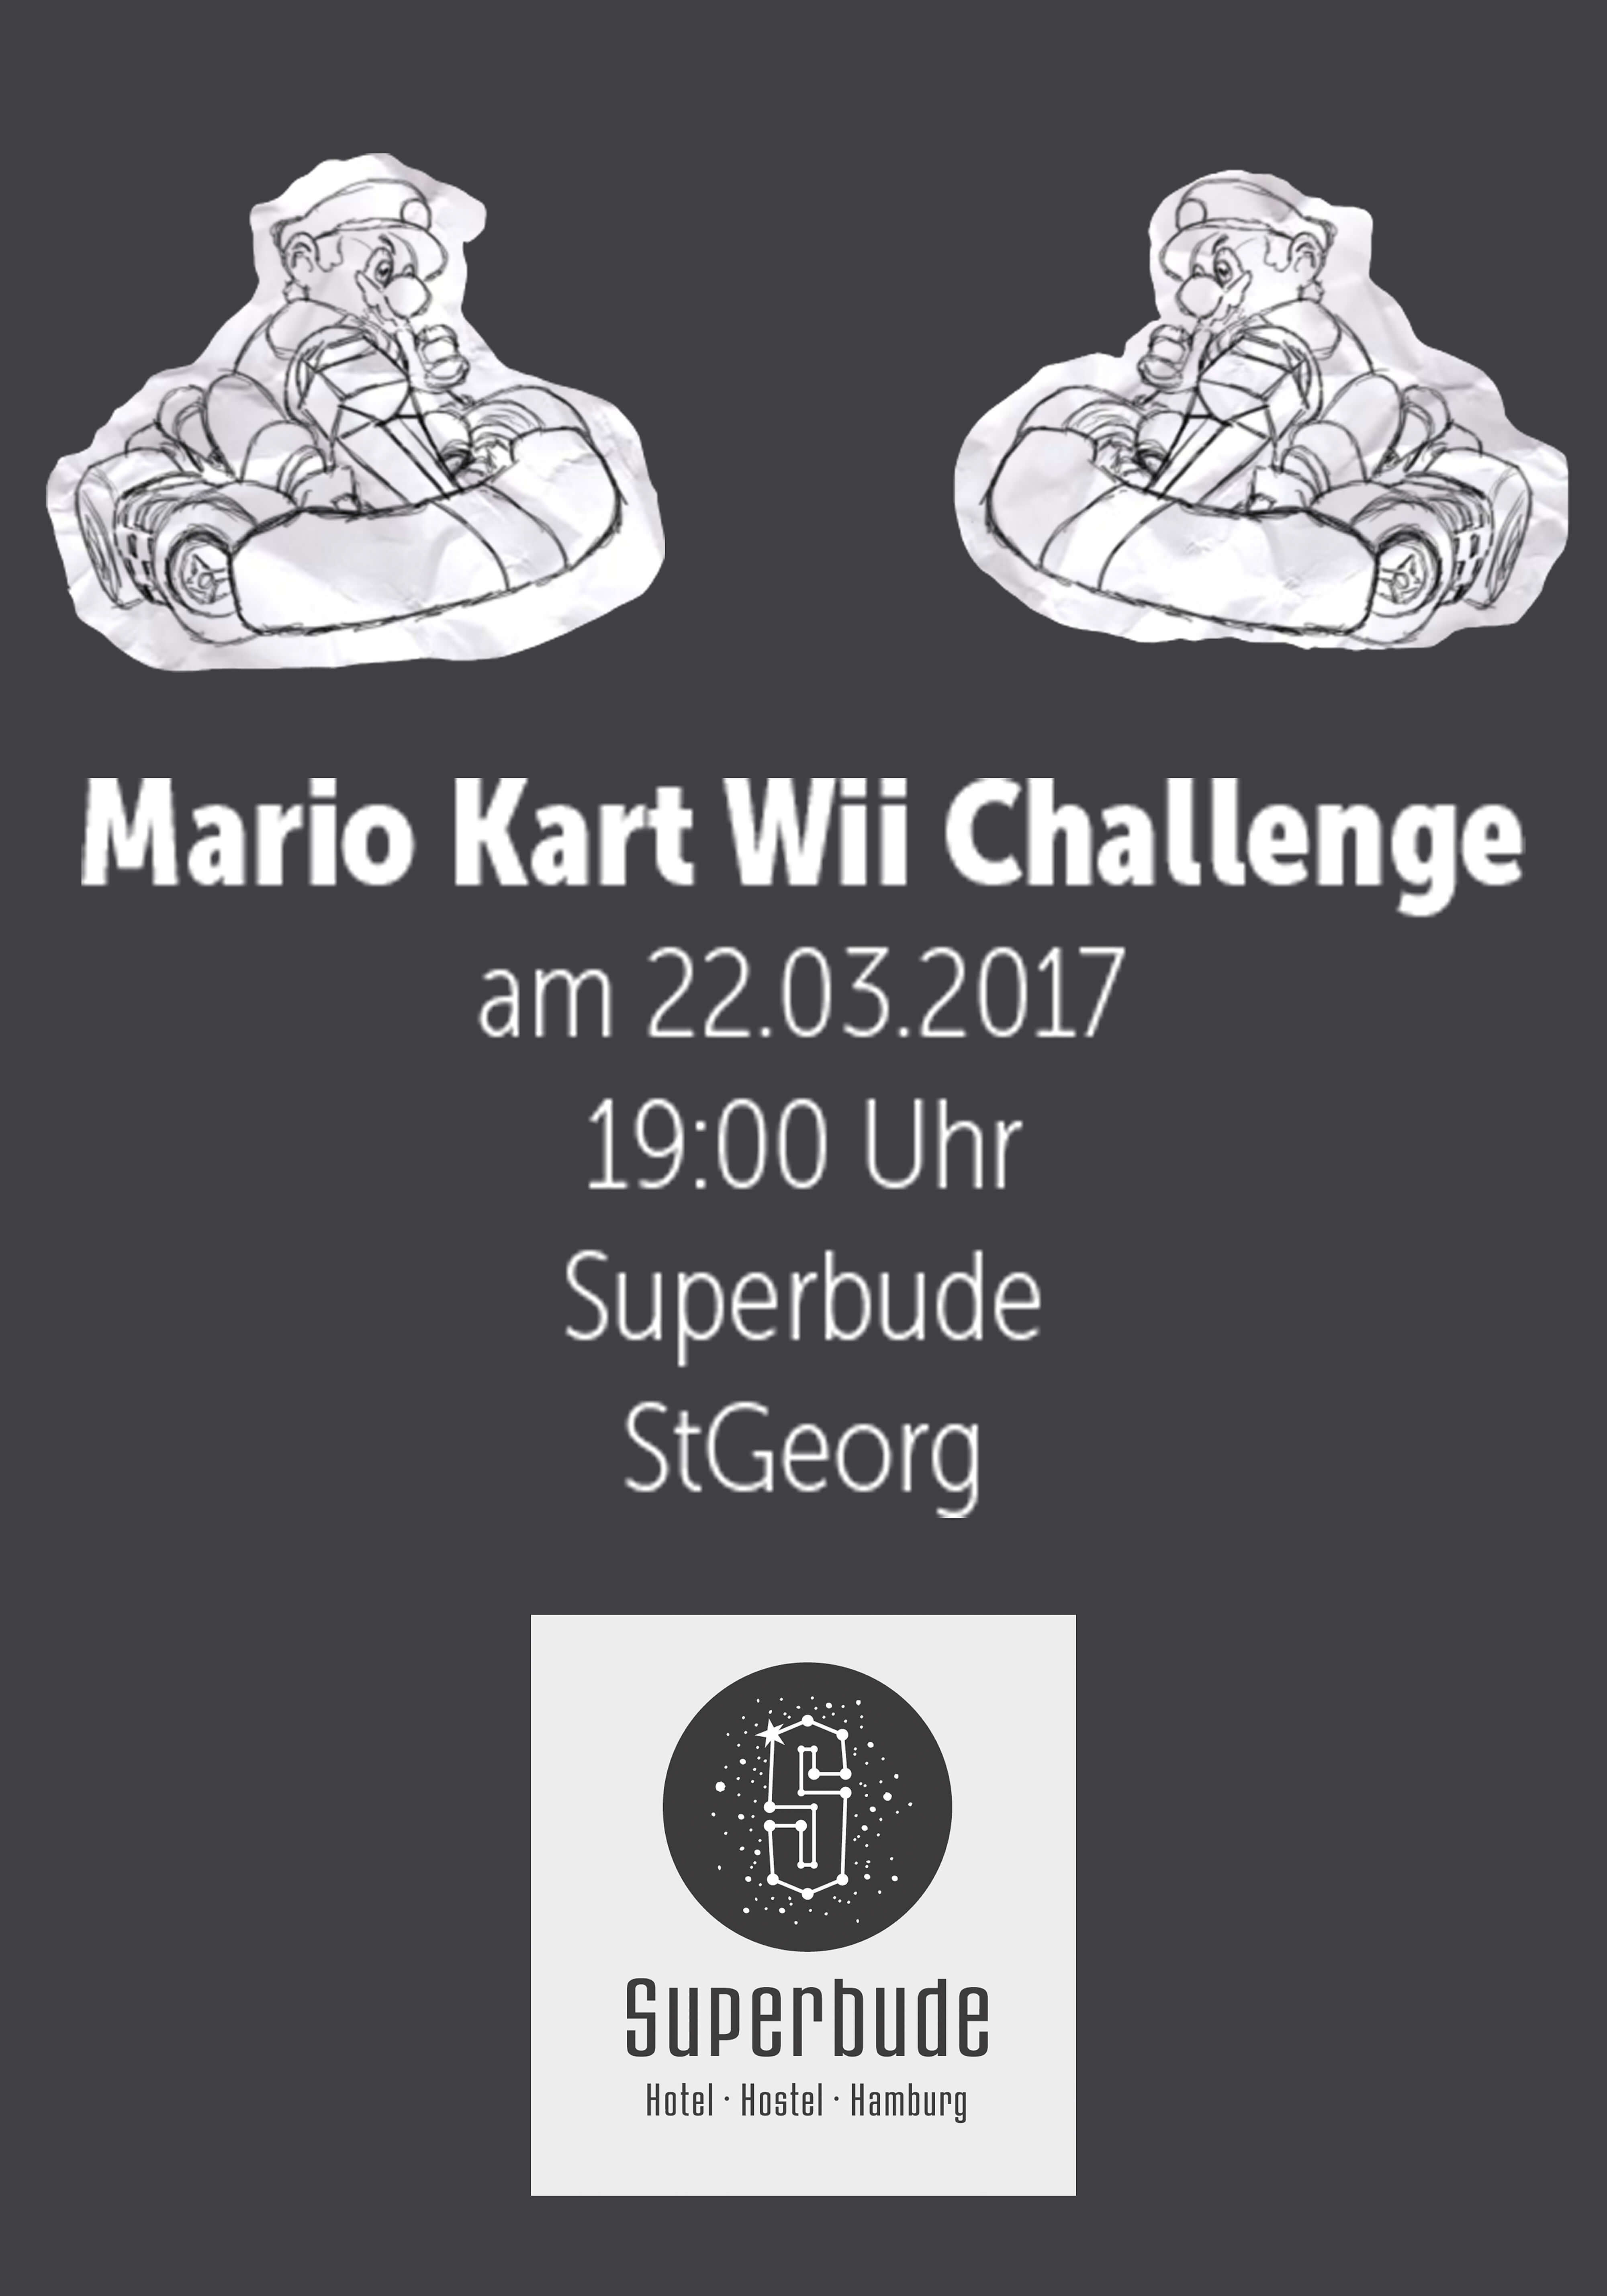 Lockere deine Finger & starte richtig durch bei der Mario Kart Wii Challenge! 4 Spieler pro Rennen – zeig’s ihnen!